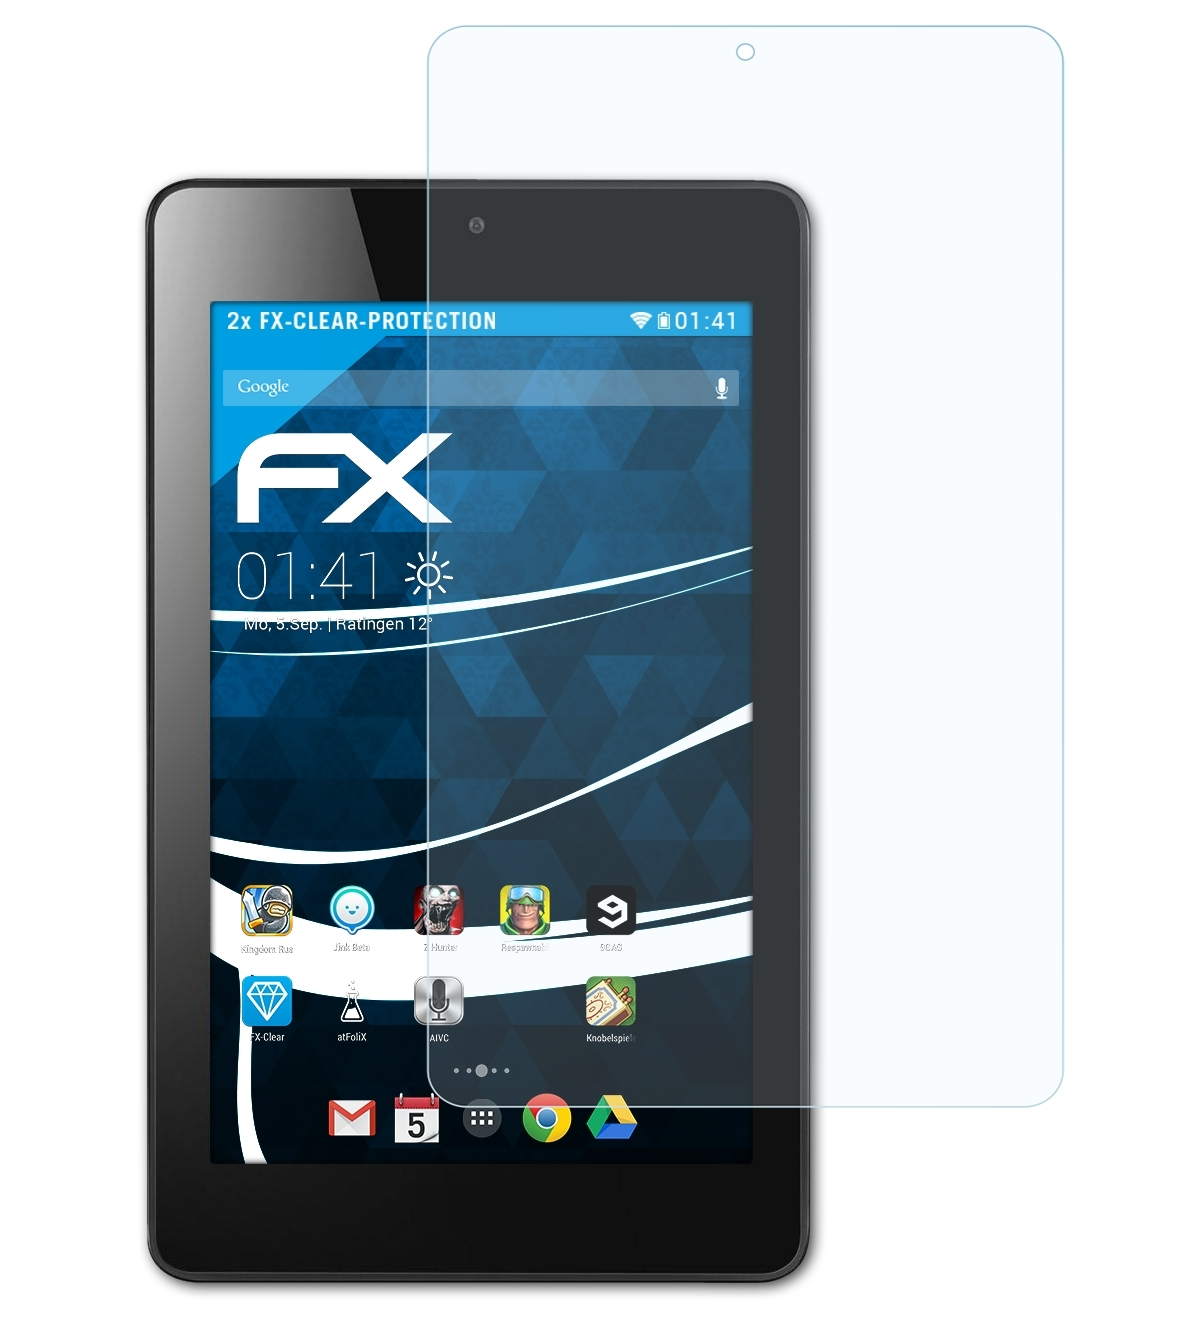 ATFOLIX 2x Iconia Acer 7 FX-Clear Displayschutz(für One (B1-760HD))